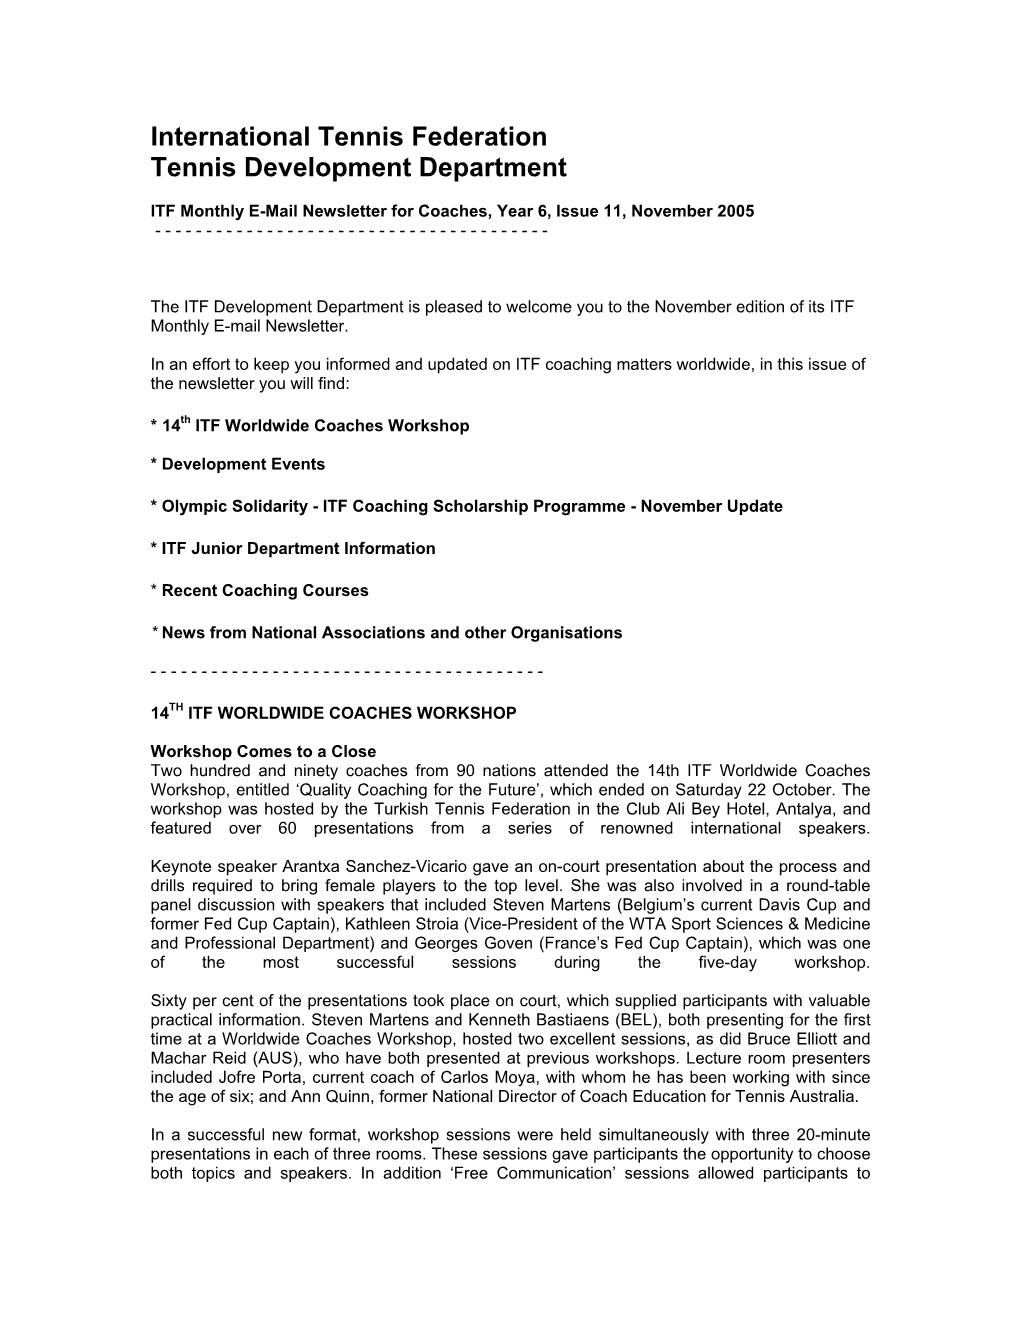 International Tennis Federation Tennis Development Department